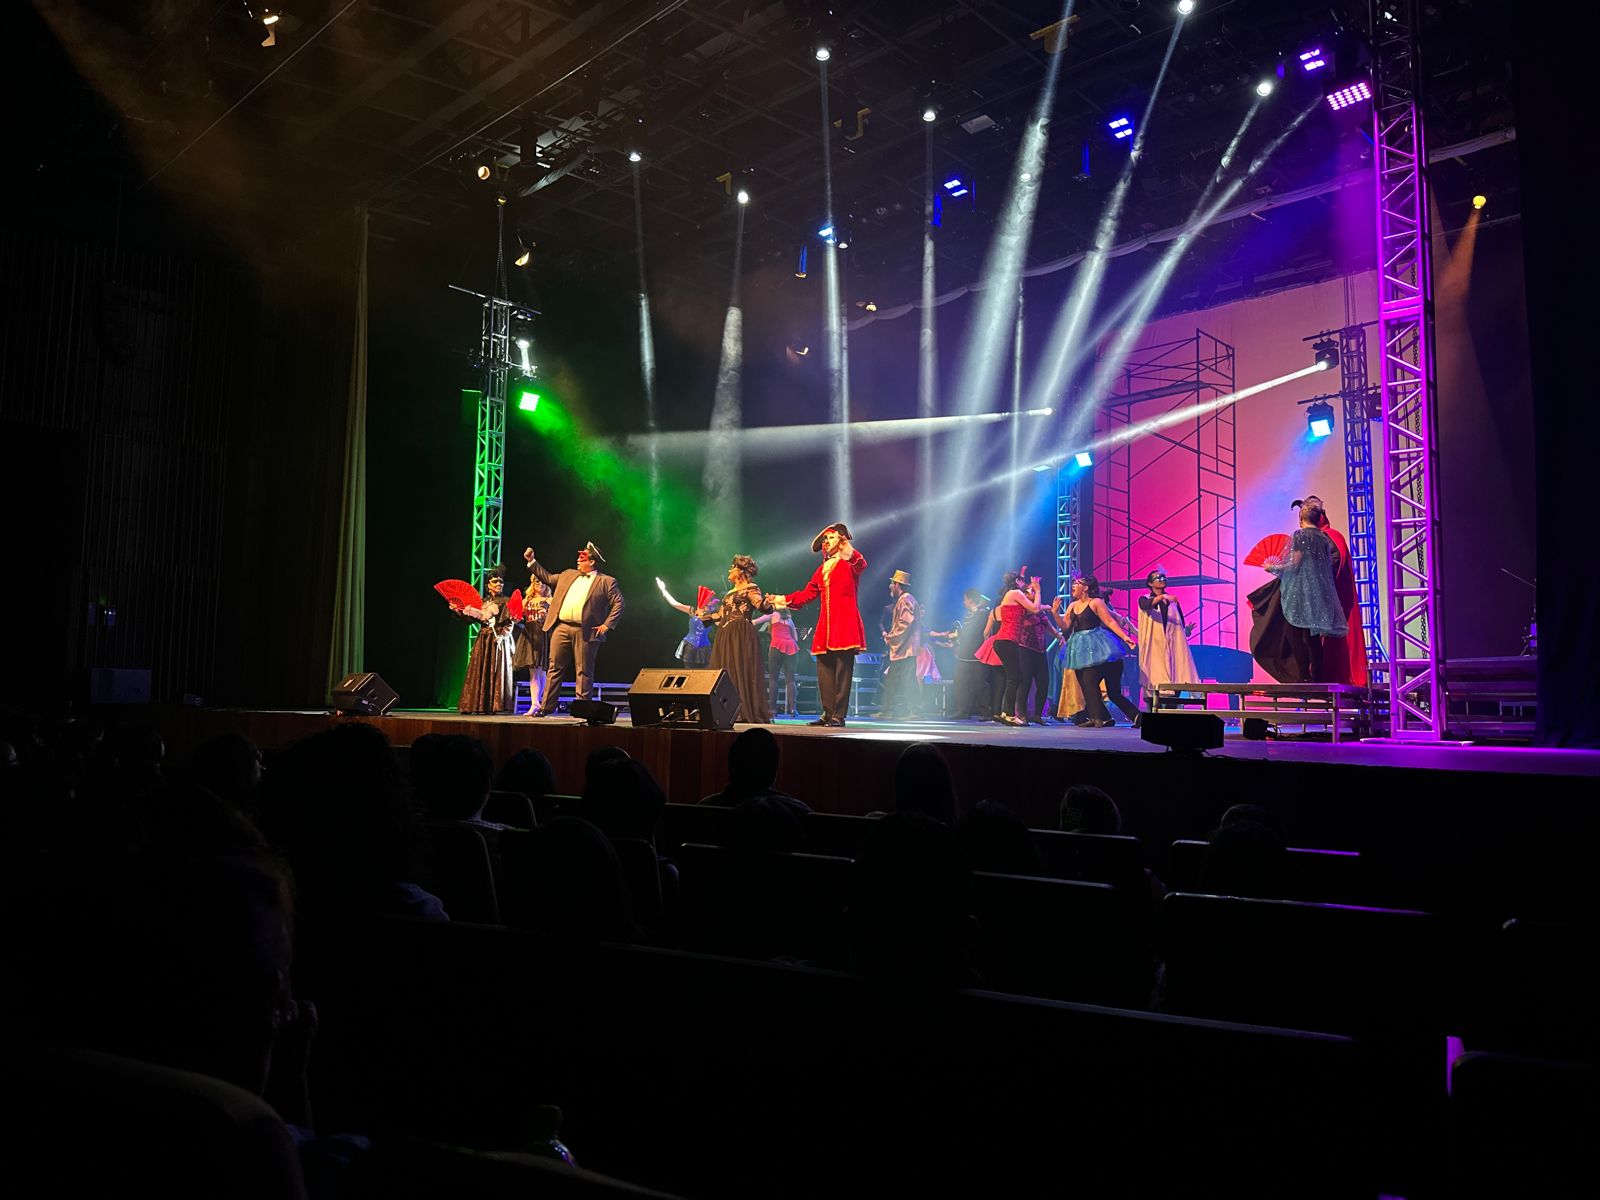 Un par de personas con instrumentos musicales en un escenario con luces

Descripción generada automáticamente con confianza baja